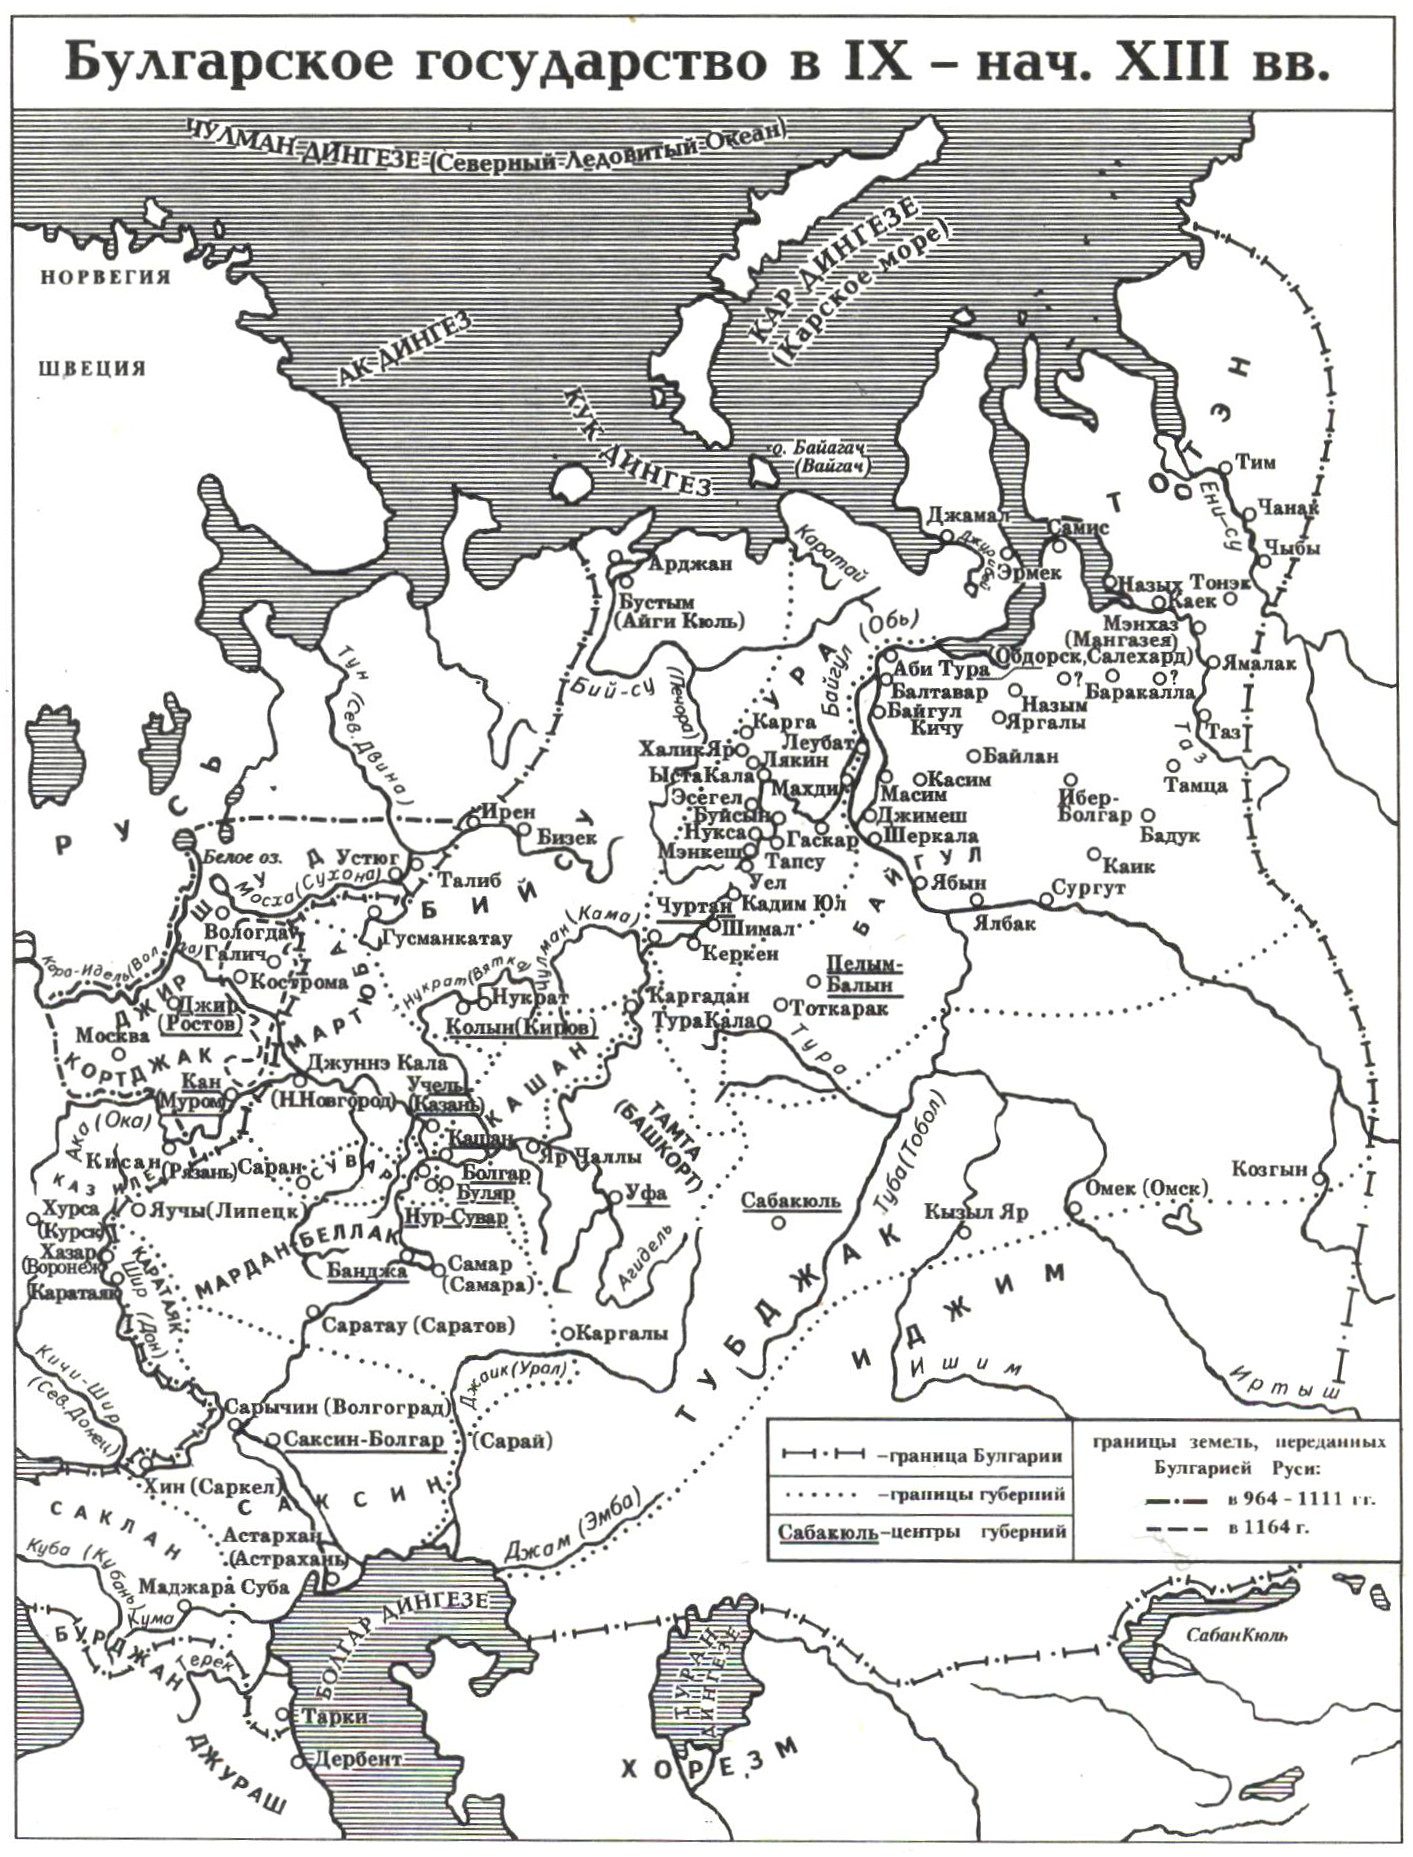 Българската държава през 9-ти - началото на 13-ти век